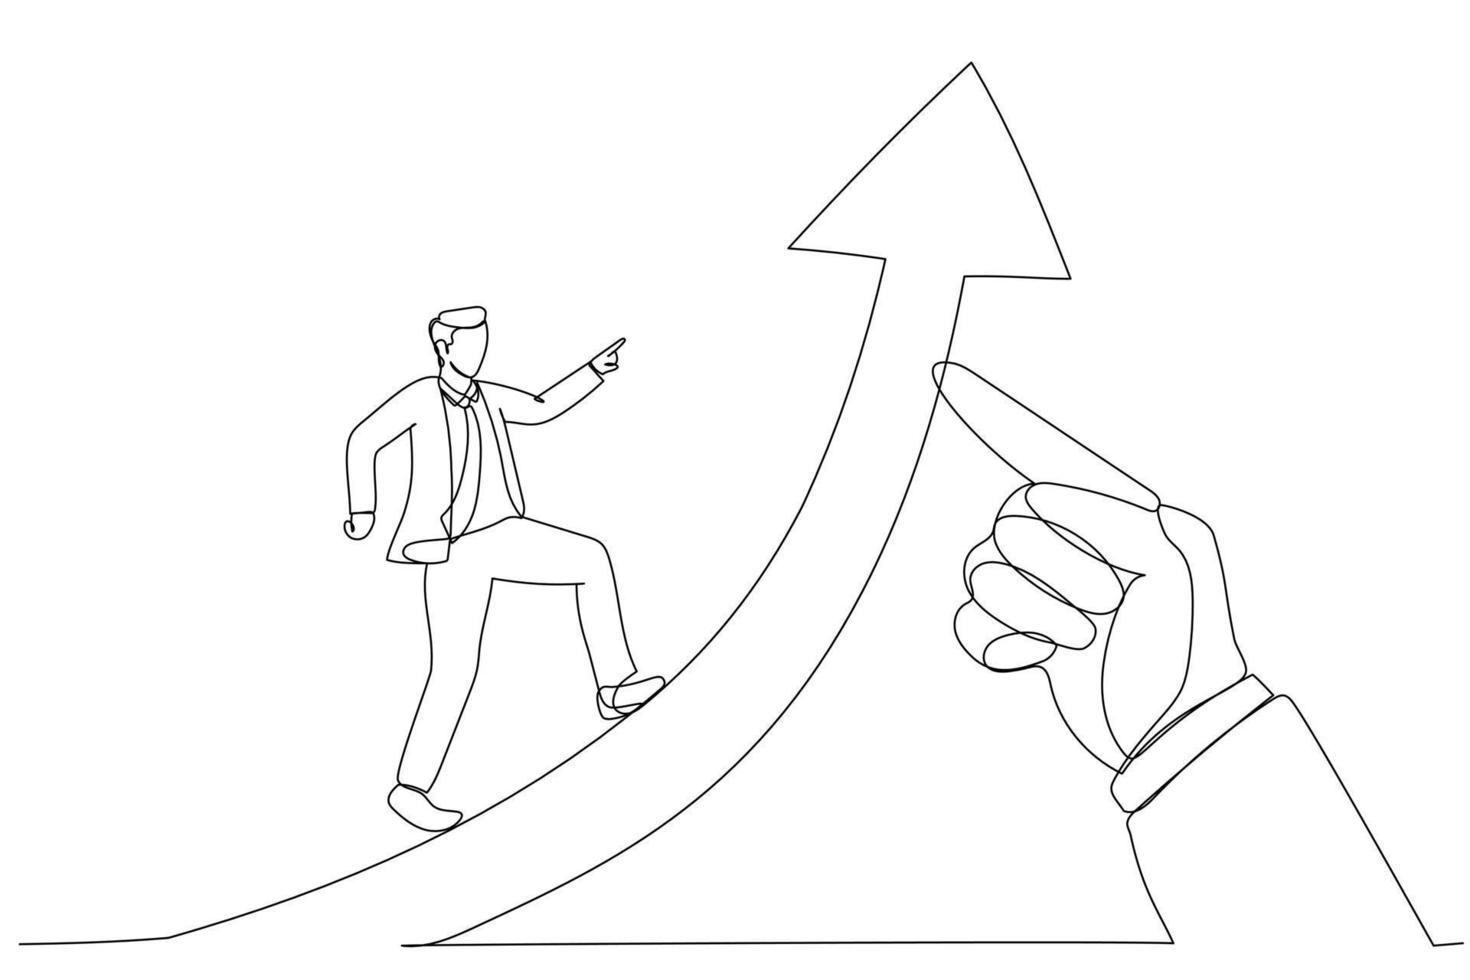 dessin animé d'homme d'affaires courant sur la flèche du succès soulevée par la main géante du chef. métaphore du succès de l'entreprise pour faire avancer le leadership. style d'art en ligne continue unique vecteur